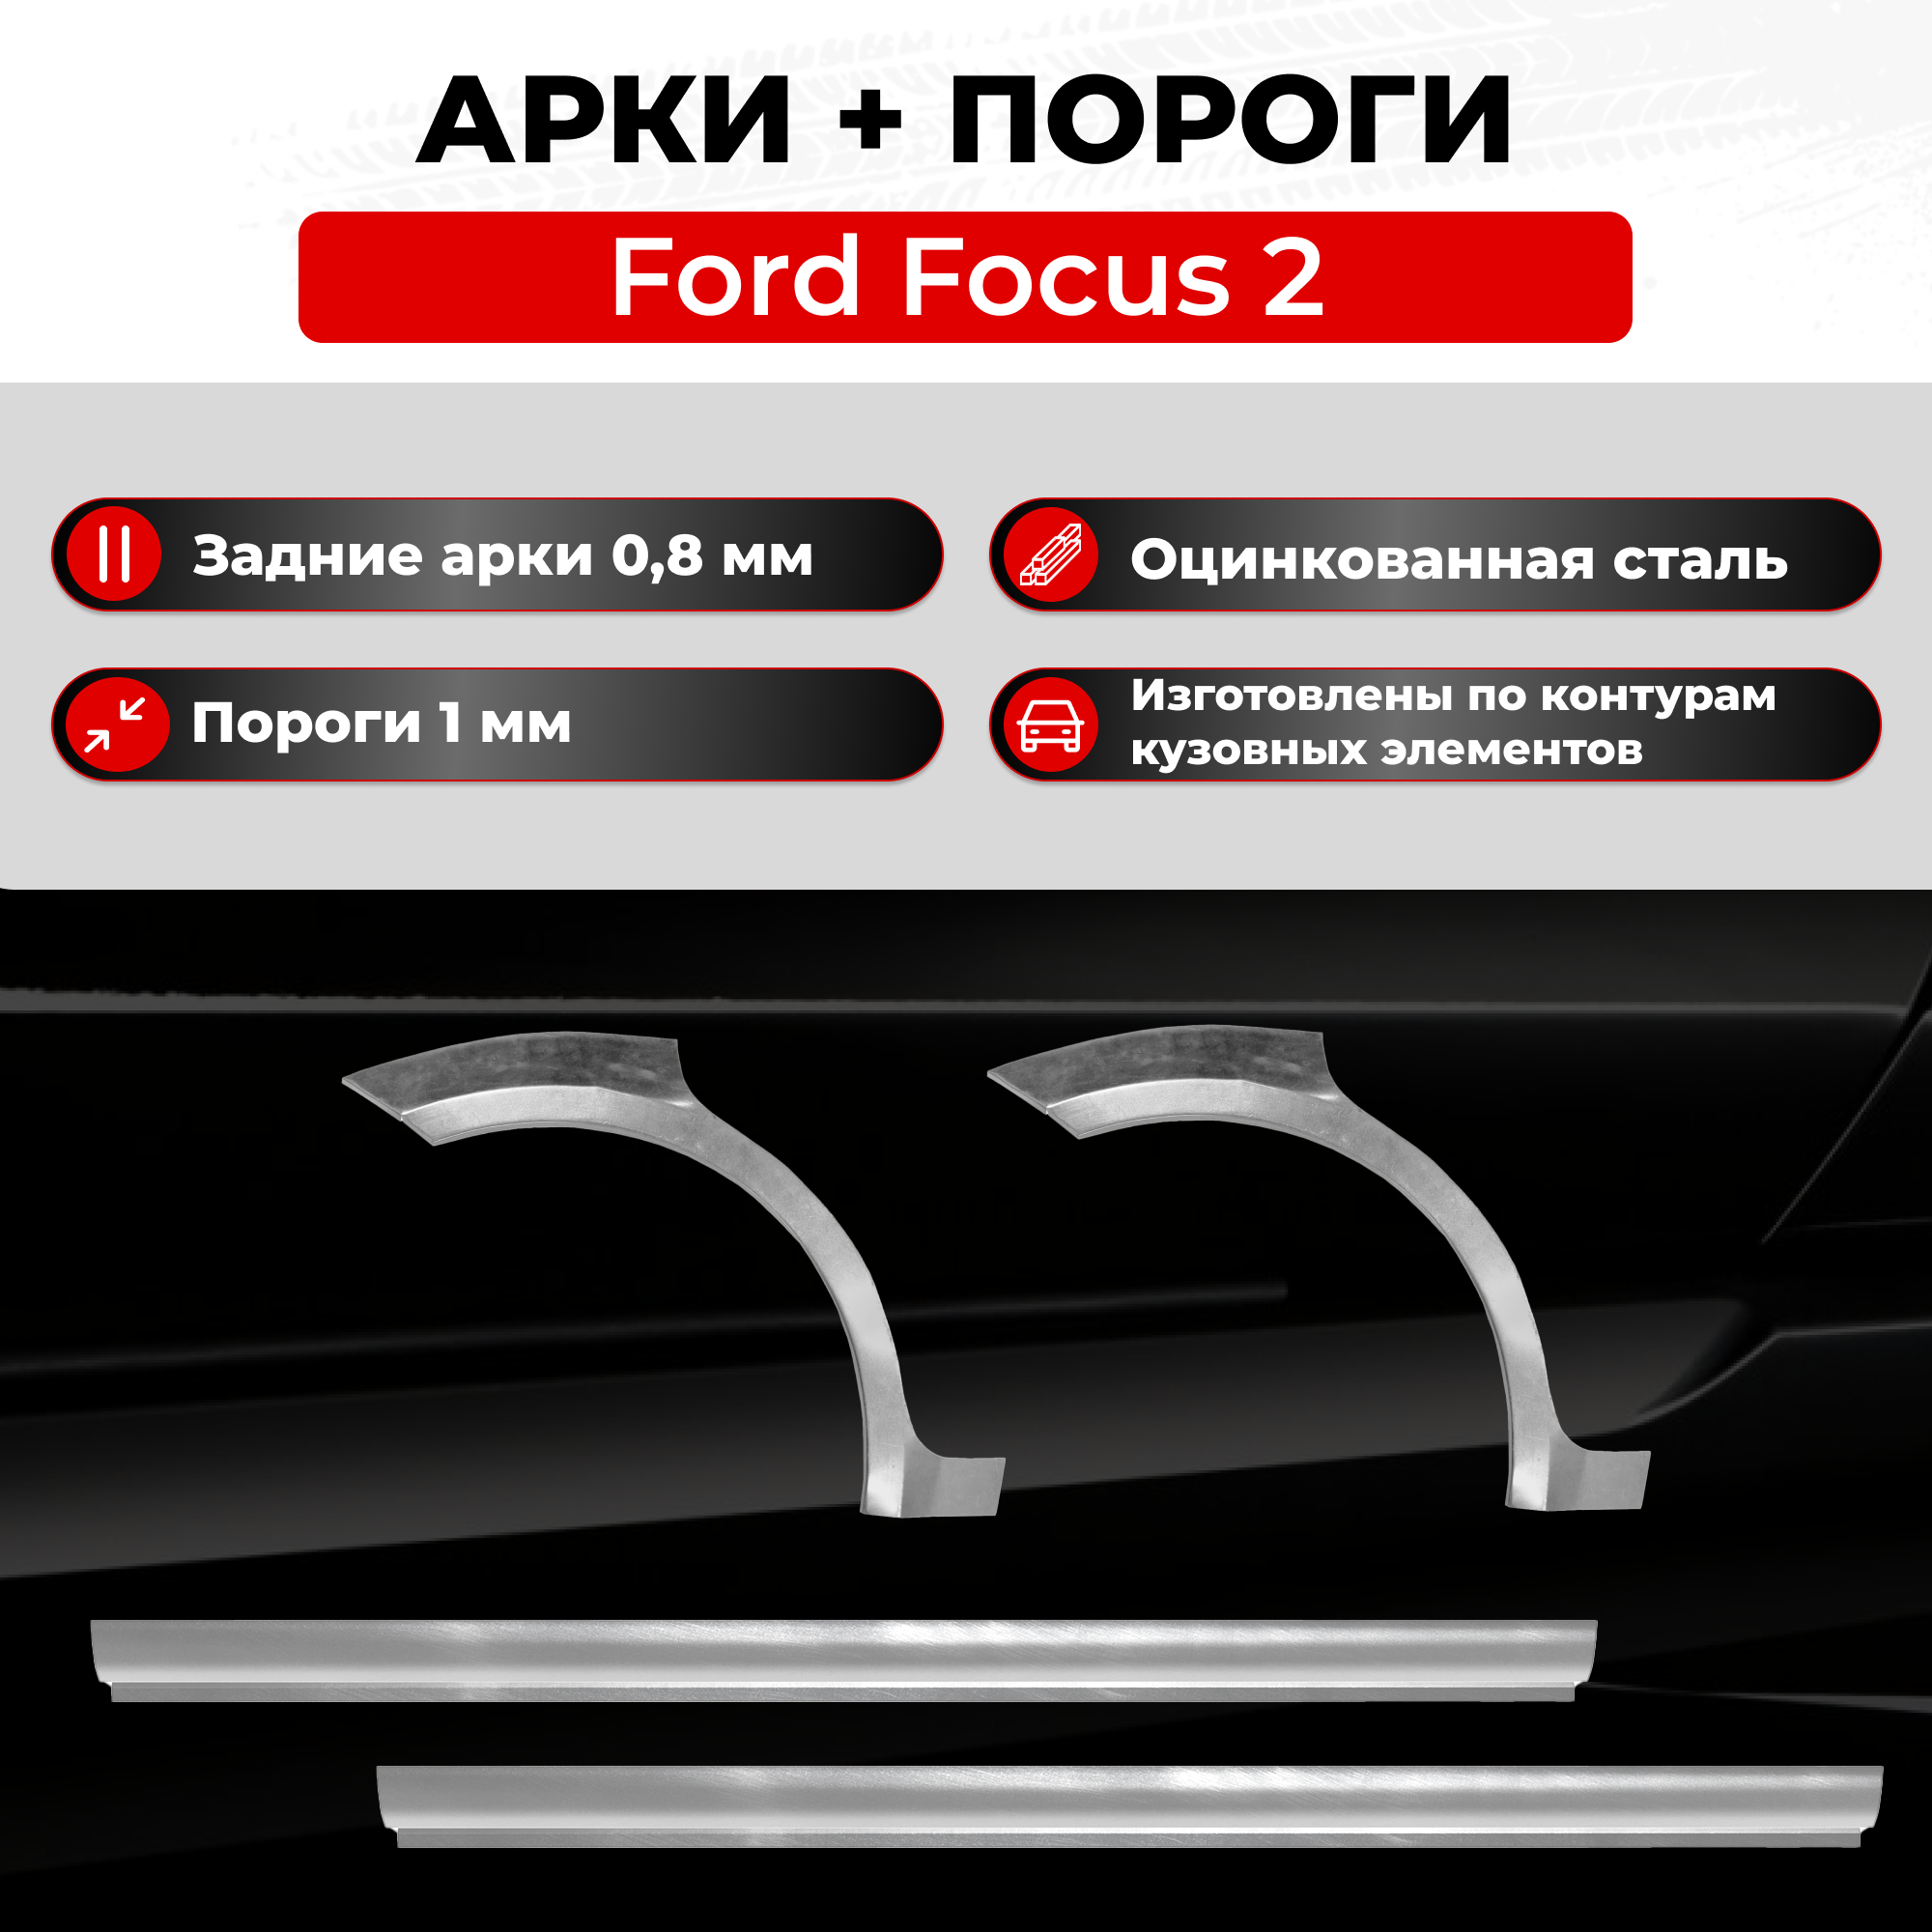 Ремонтные задние арки и полупороги (комплект) на Ford Focus 2 2005-2011 седан (Форд Фокус 2) оцинкованная сталь 0.8 мм и 1 мм